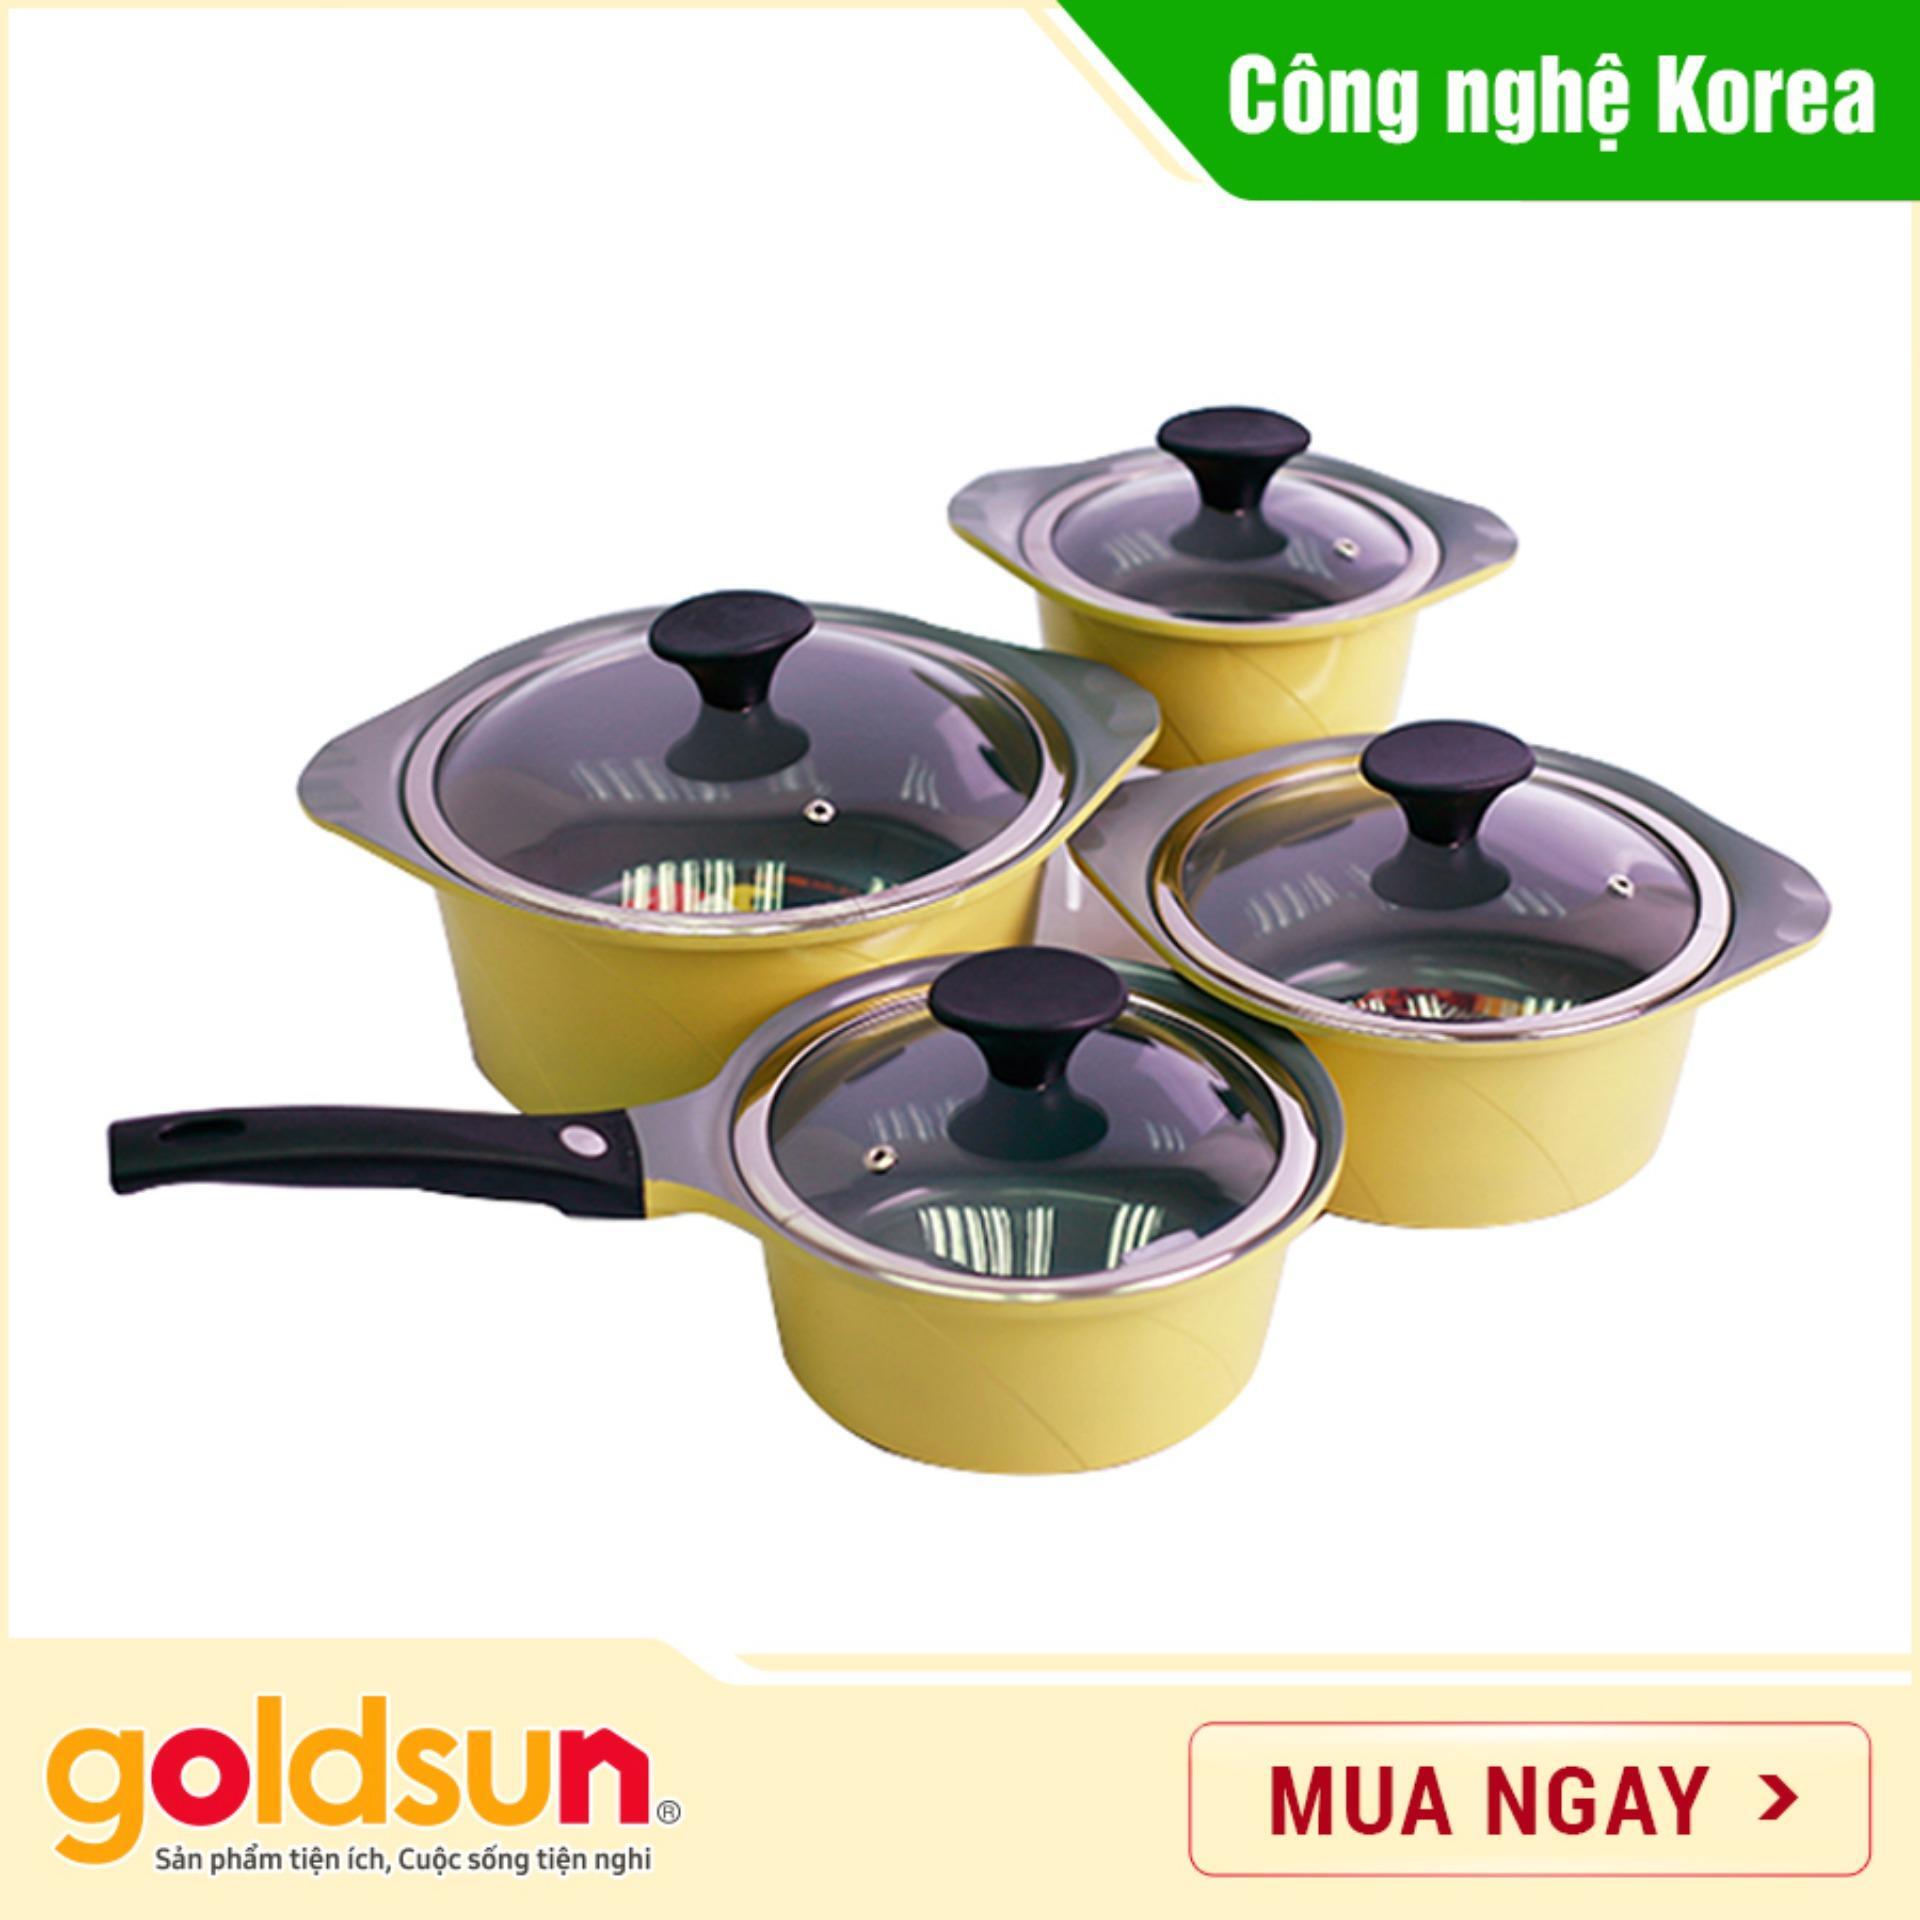 Bộ nồi gốm Goldsun công nghệ Hàn Quốc Korea Star AD06-2